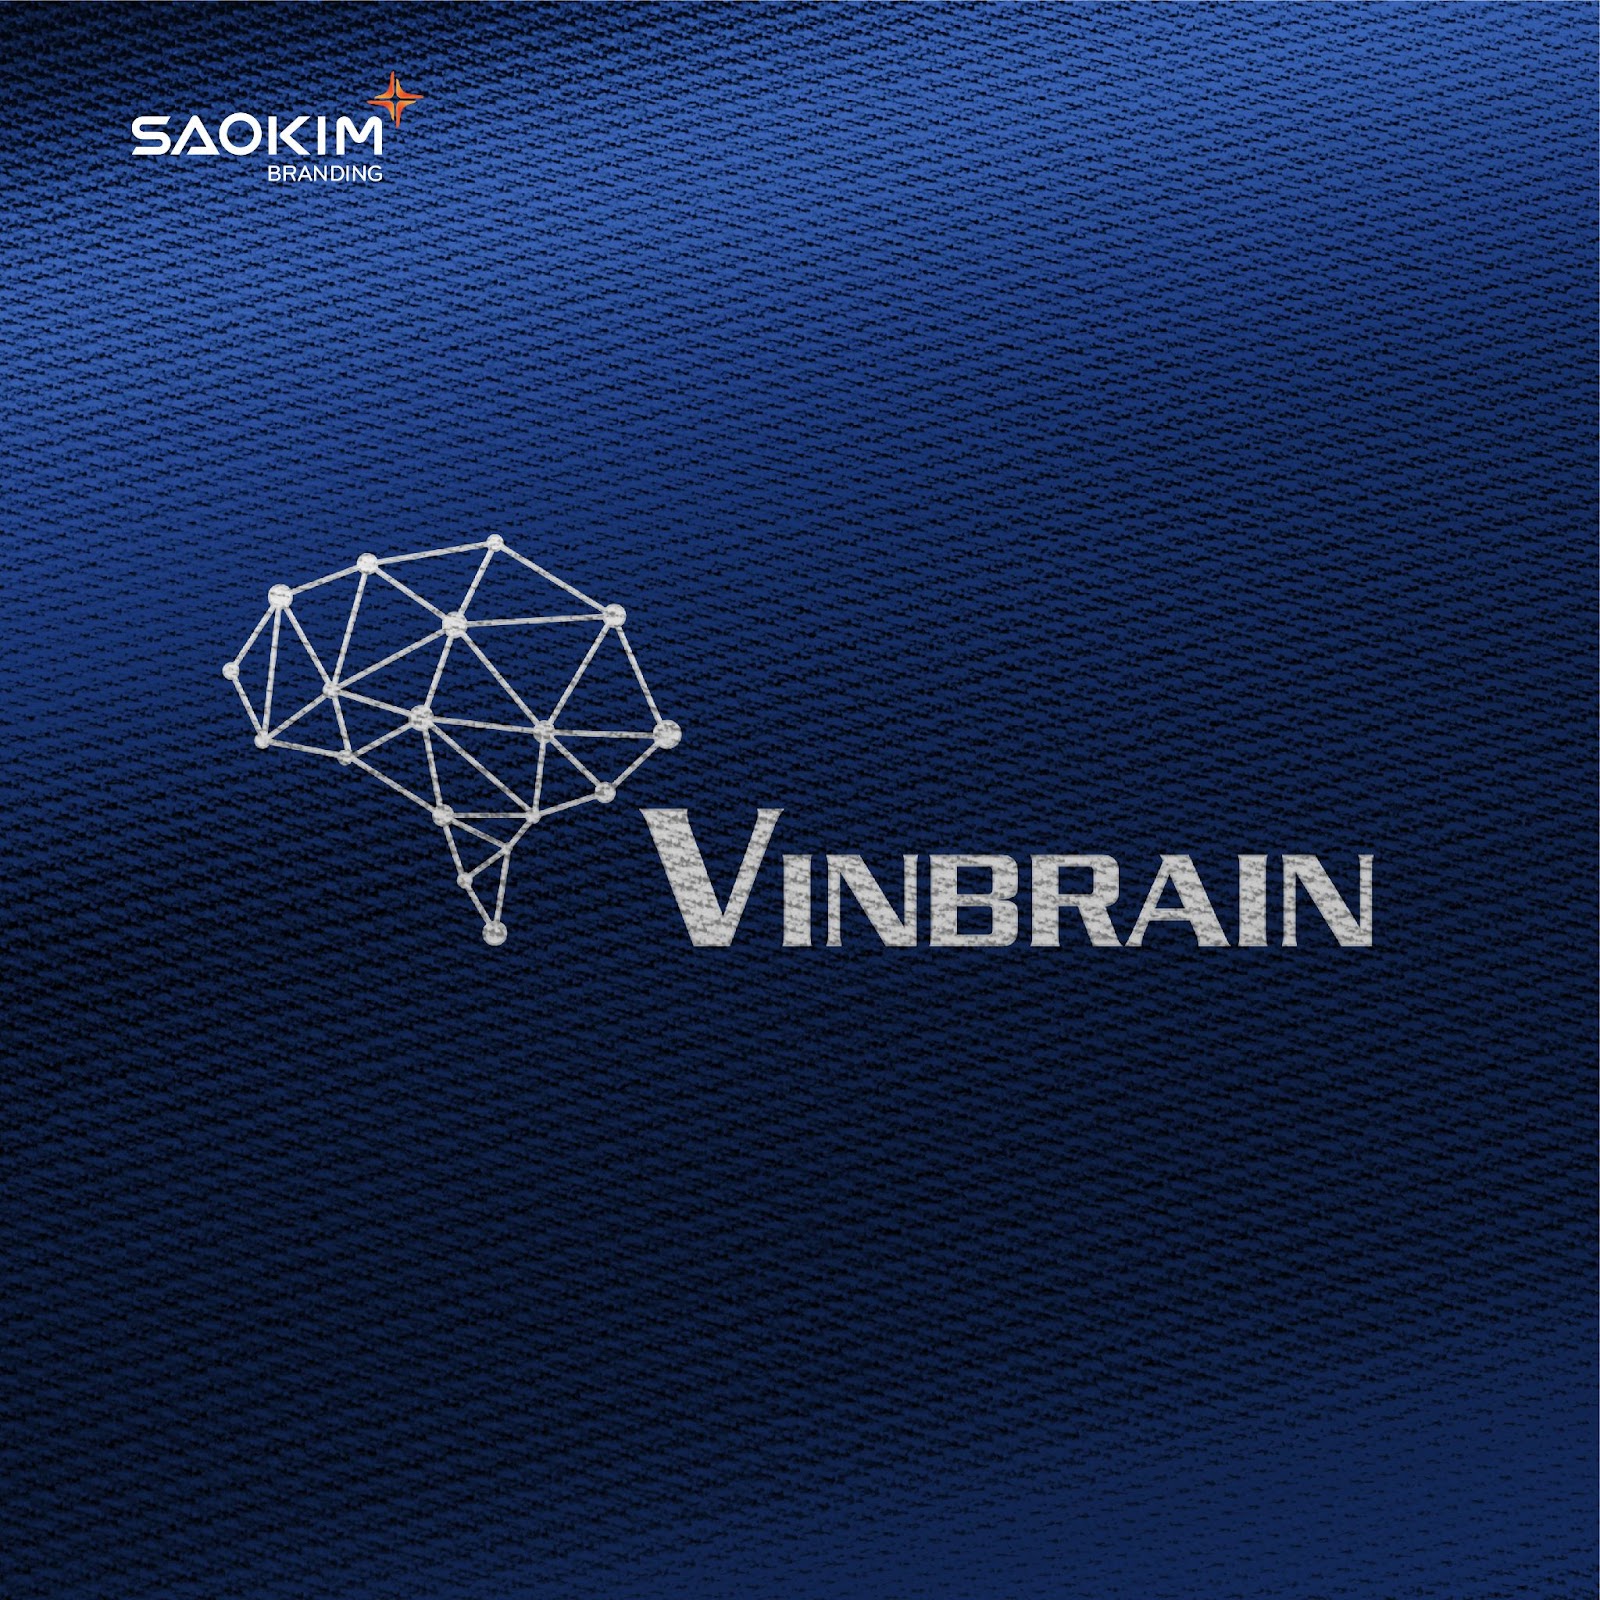 Logo mới và bộ nhận diện của Vinbrain cần giải quyết được các vấn đề còn tồn đọng của doanh nghiệp